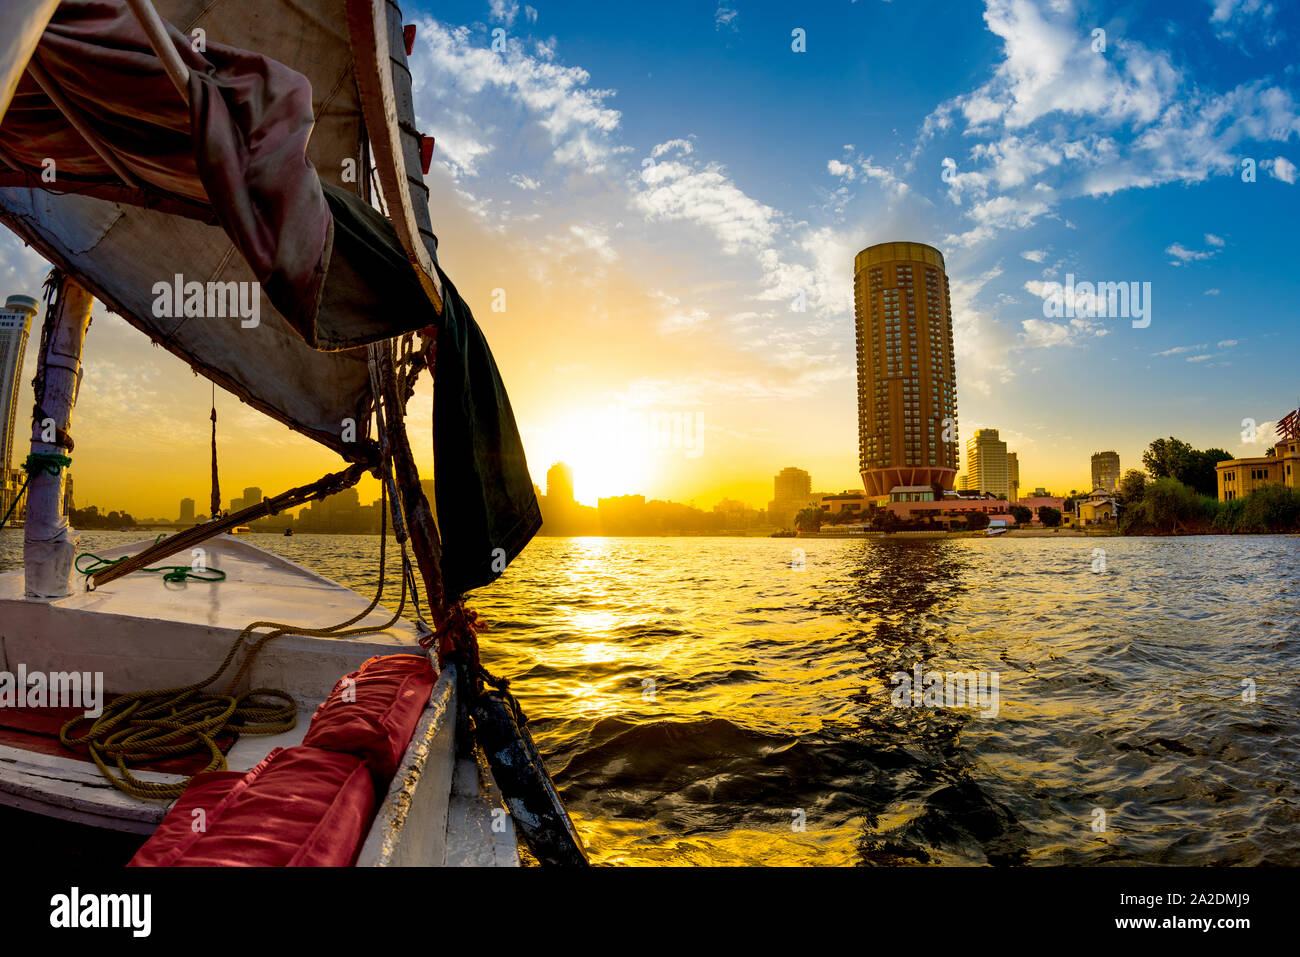 Paseo en faluca por el Nilo, El Cairo, Egipto Foto de stock